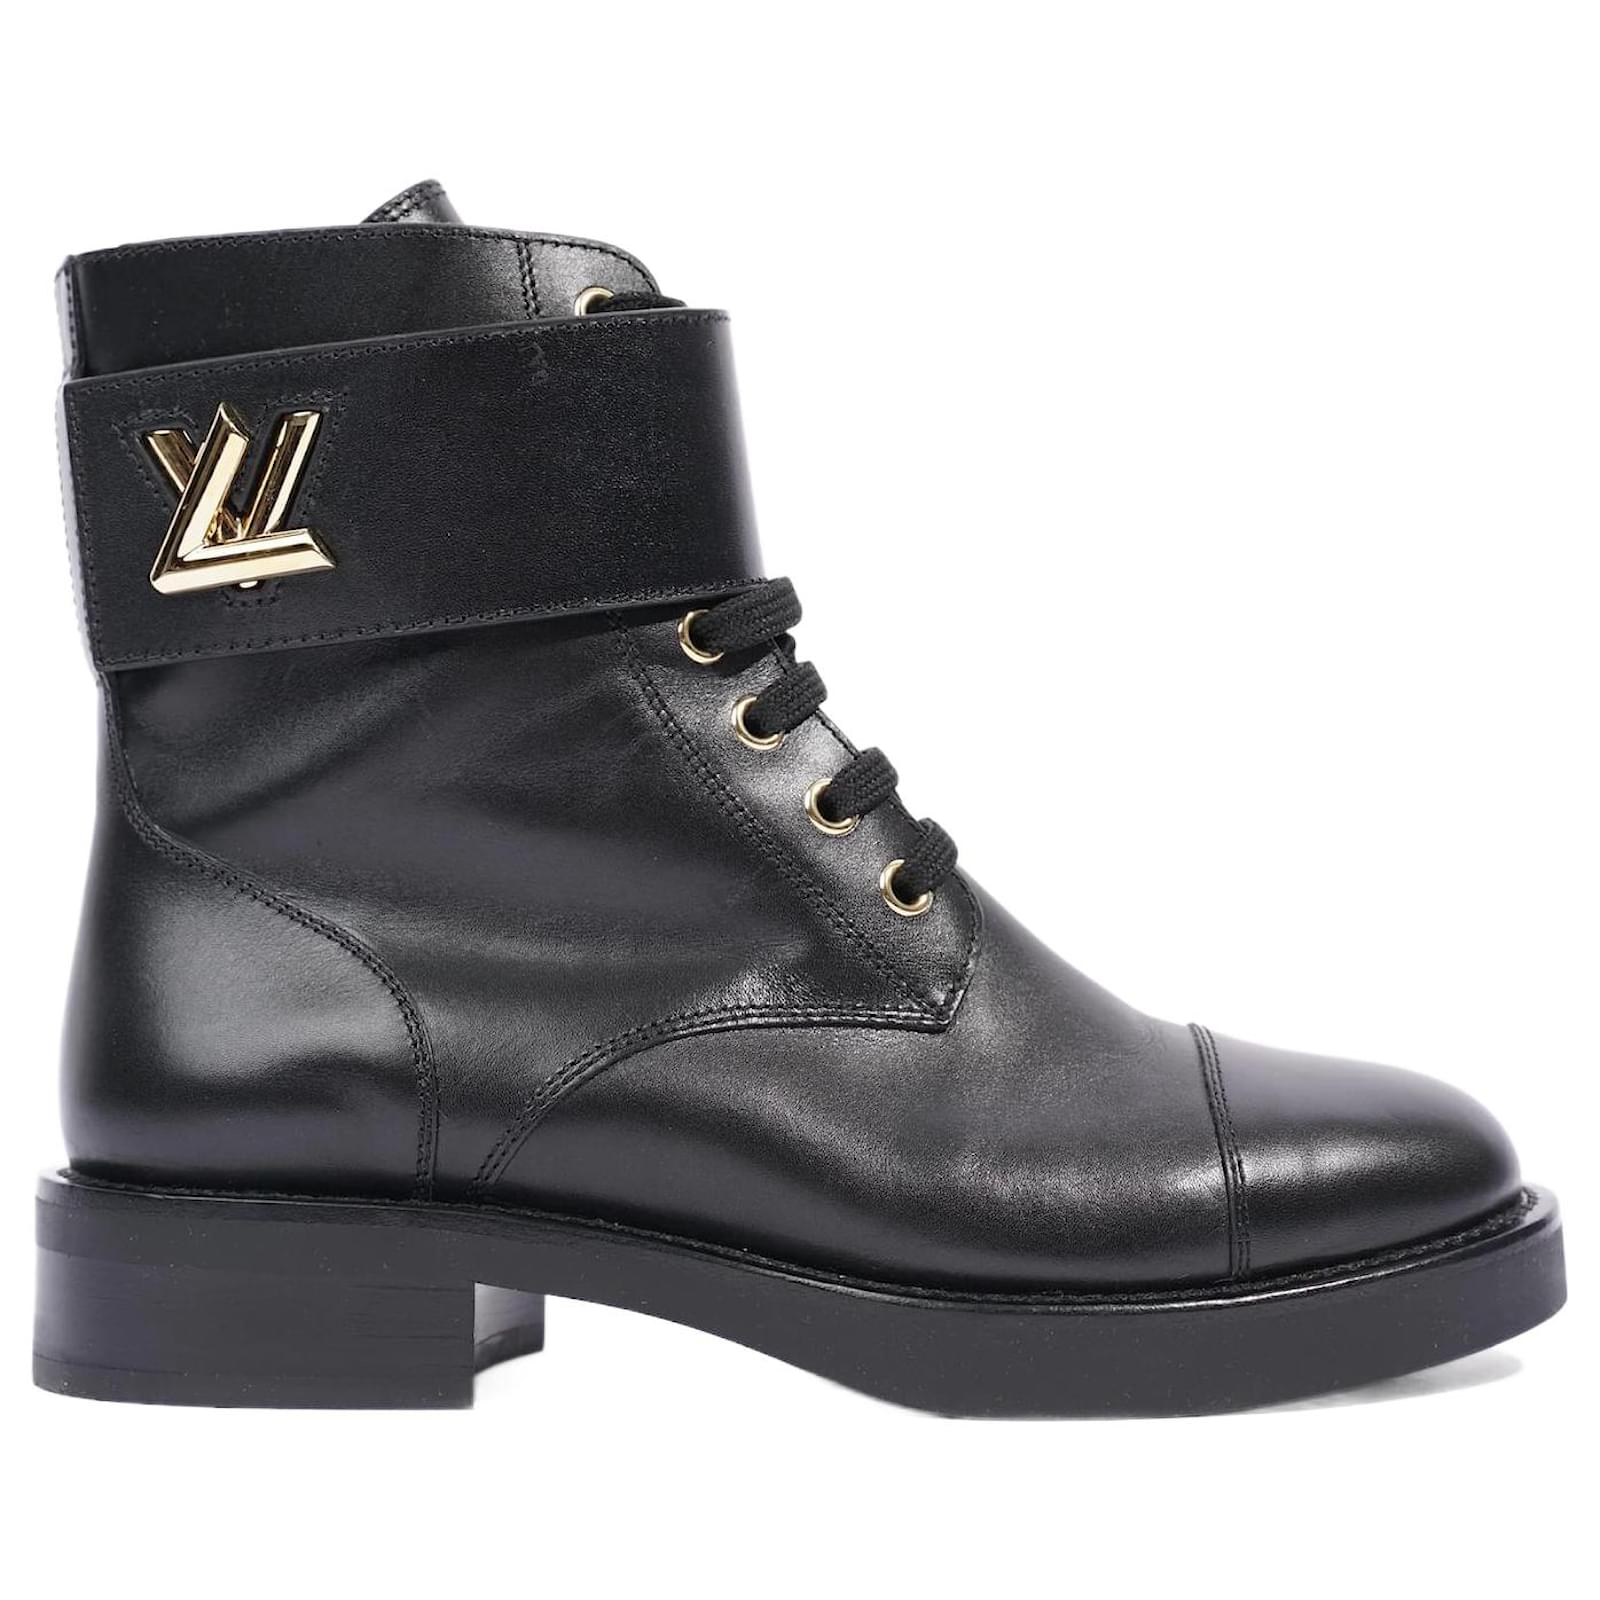 Louis Vuitton Womens Wonderland Boot Black / GOLD EU 36 / UK 3